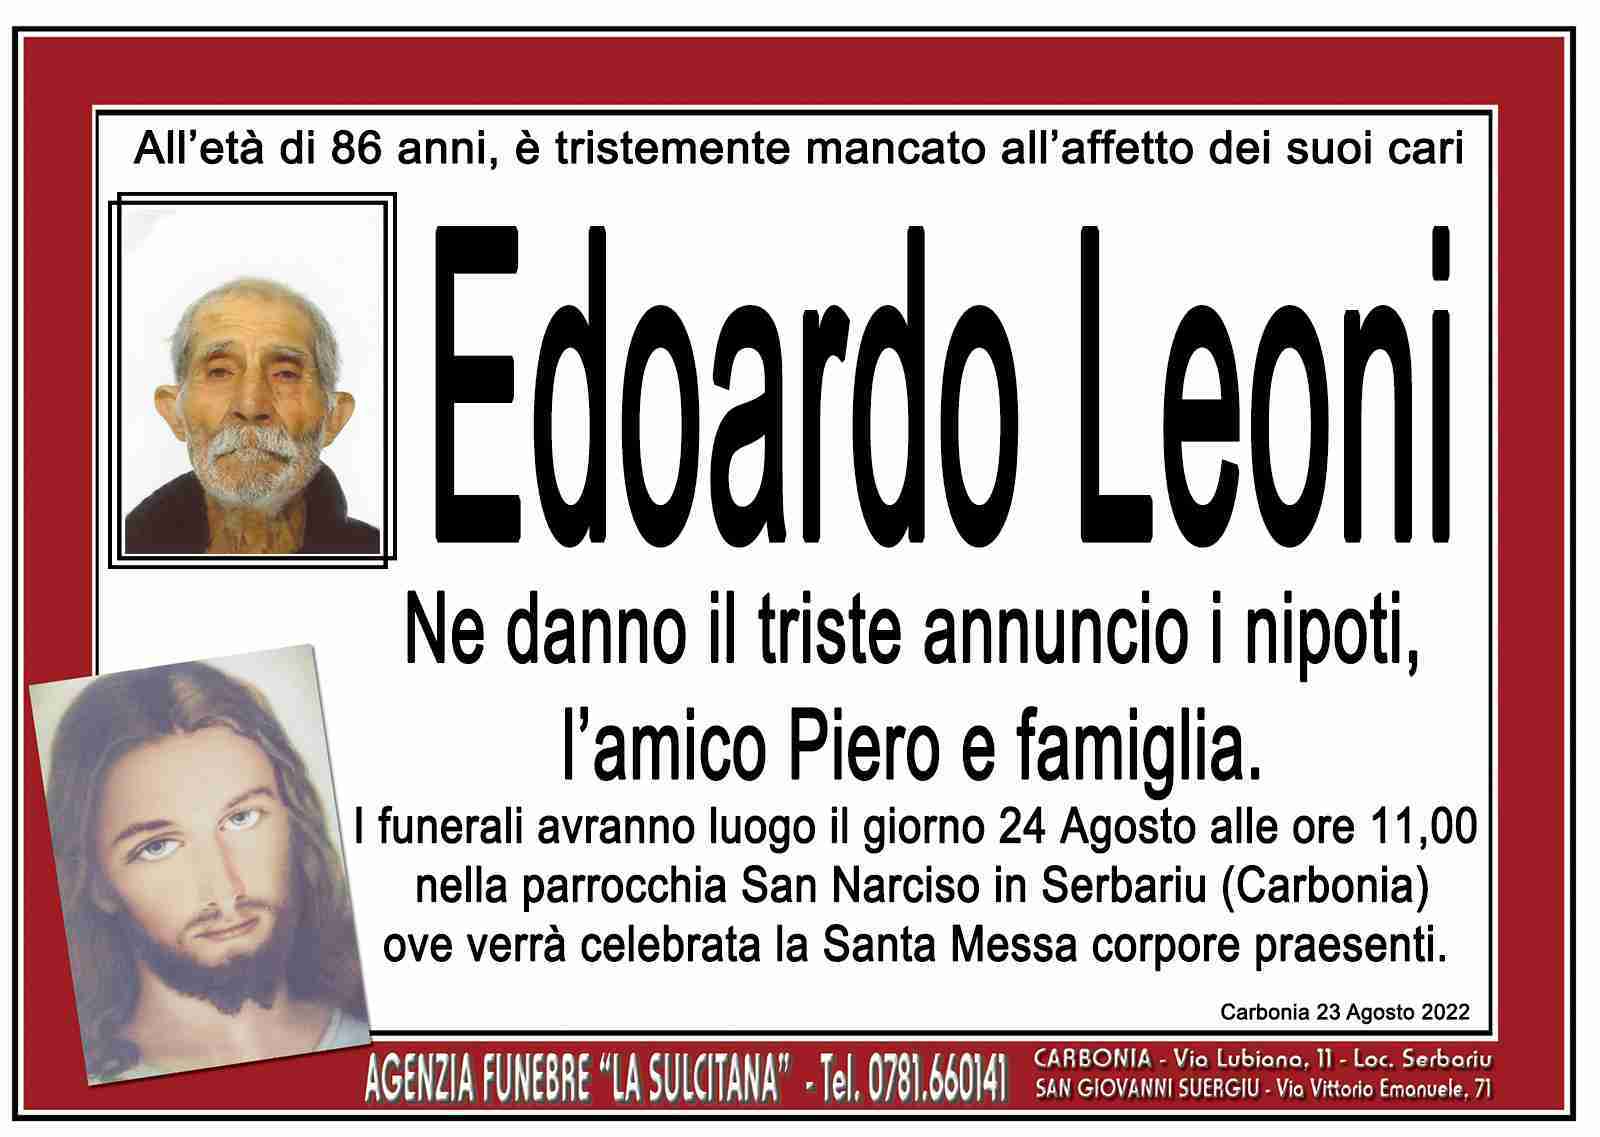 Edoardo Leoni